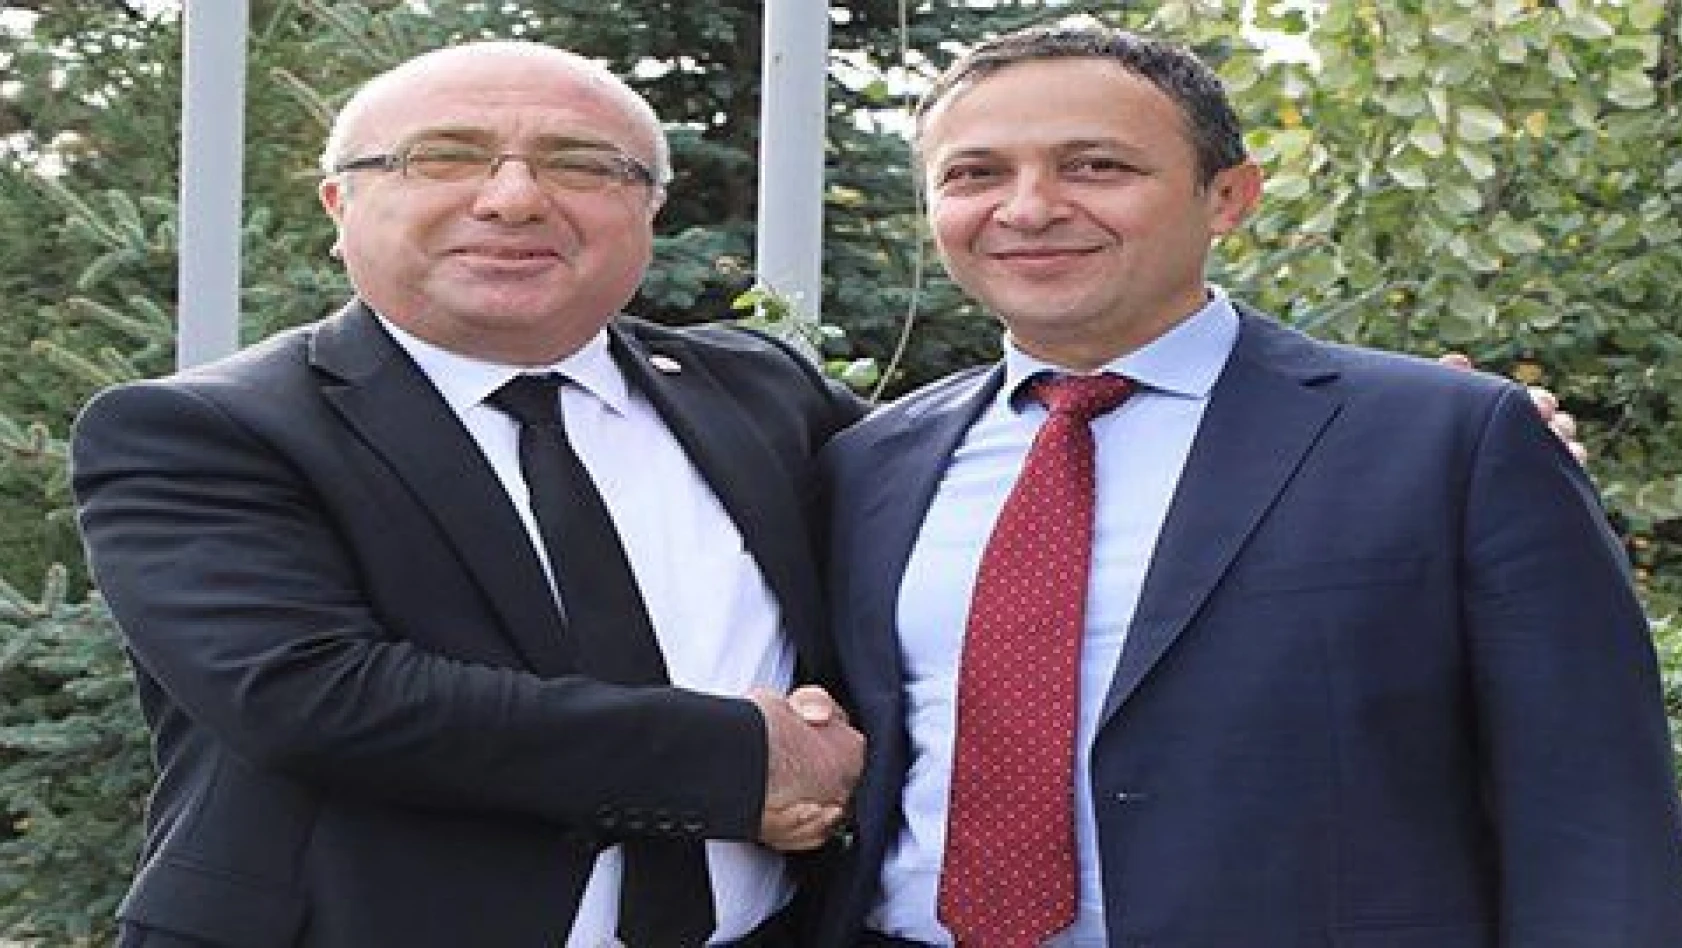 ERÜ Rektörü Çalış, Kayseri Üniversitesi Rektörü Karamustafa'yı Ziyaret Etti 